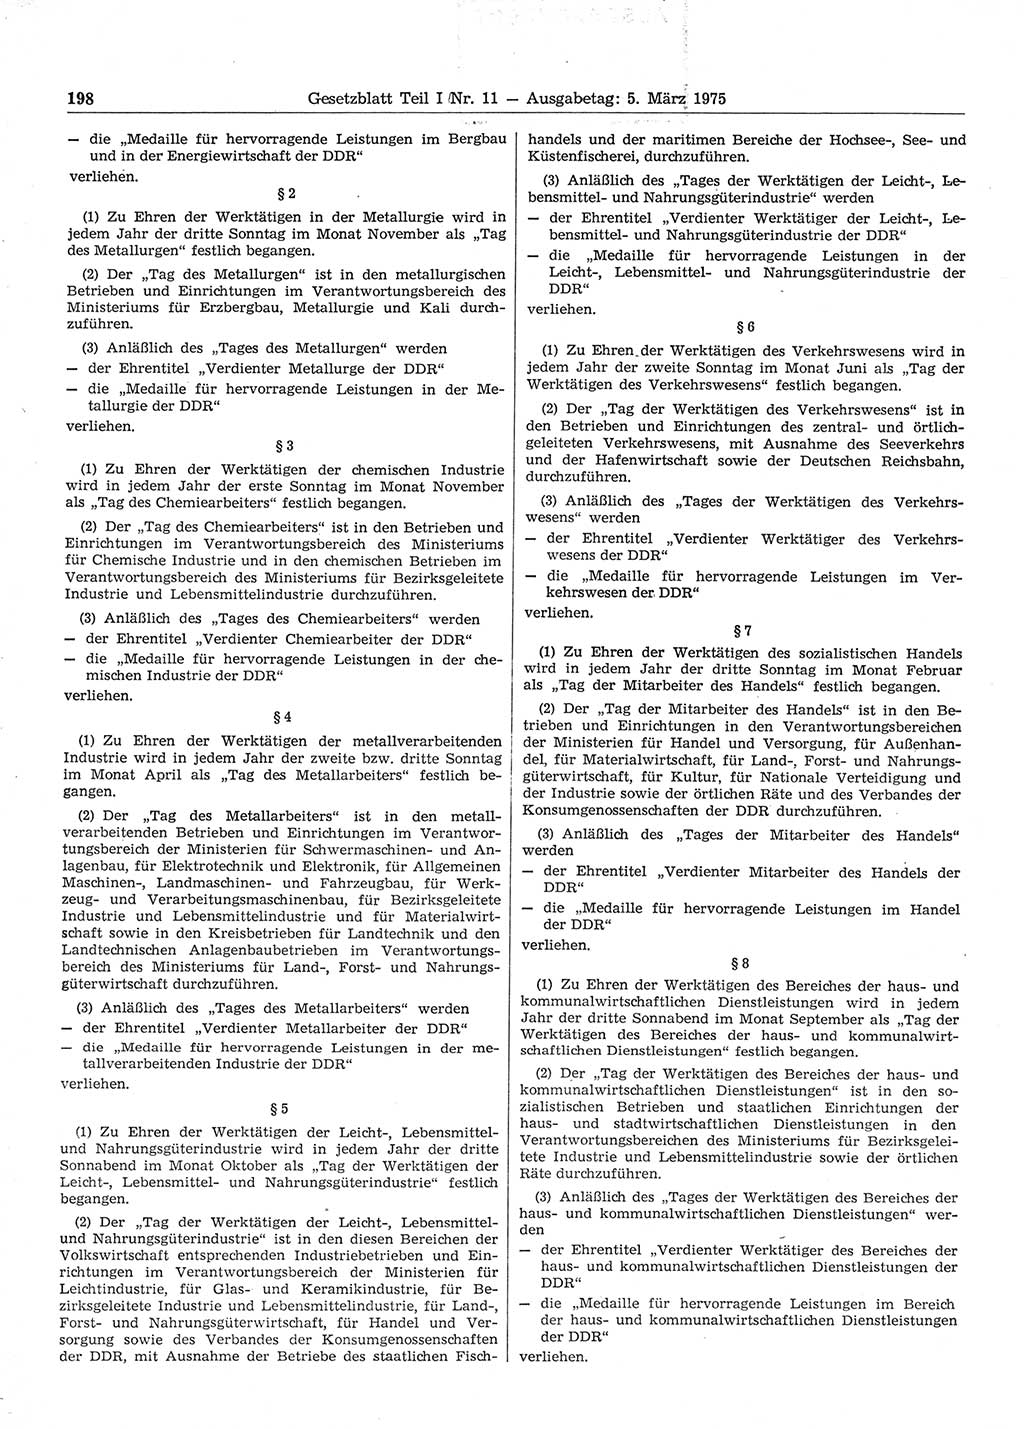 Gesetzblatt (GBl.) der Deutschen Demokratischen Republik (DDR) Teil Ⅰ 1975, Seite 198 (GBl. DDR Ⅰ 1975, S. 198)